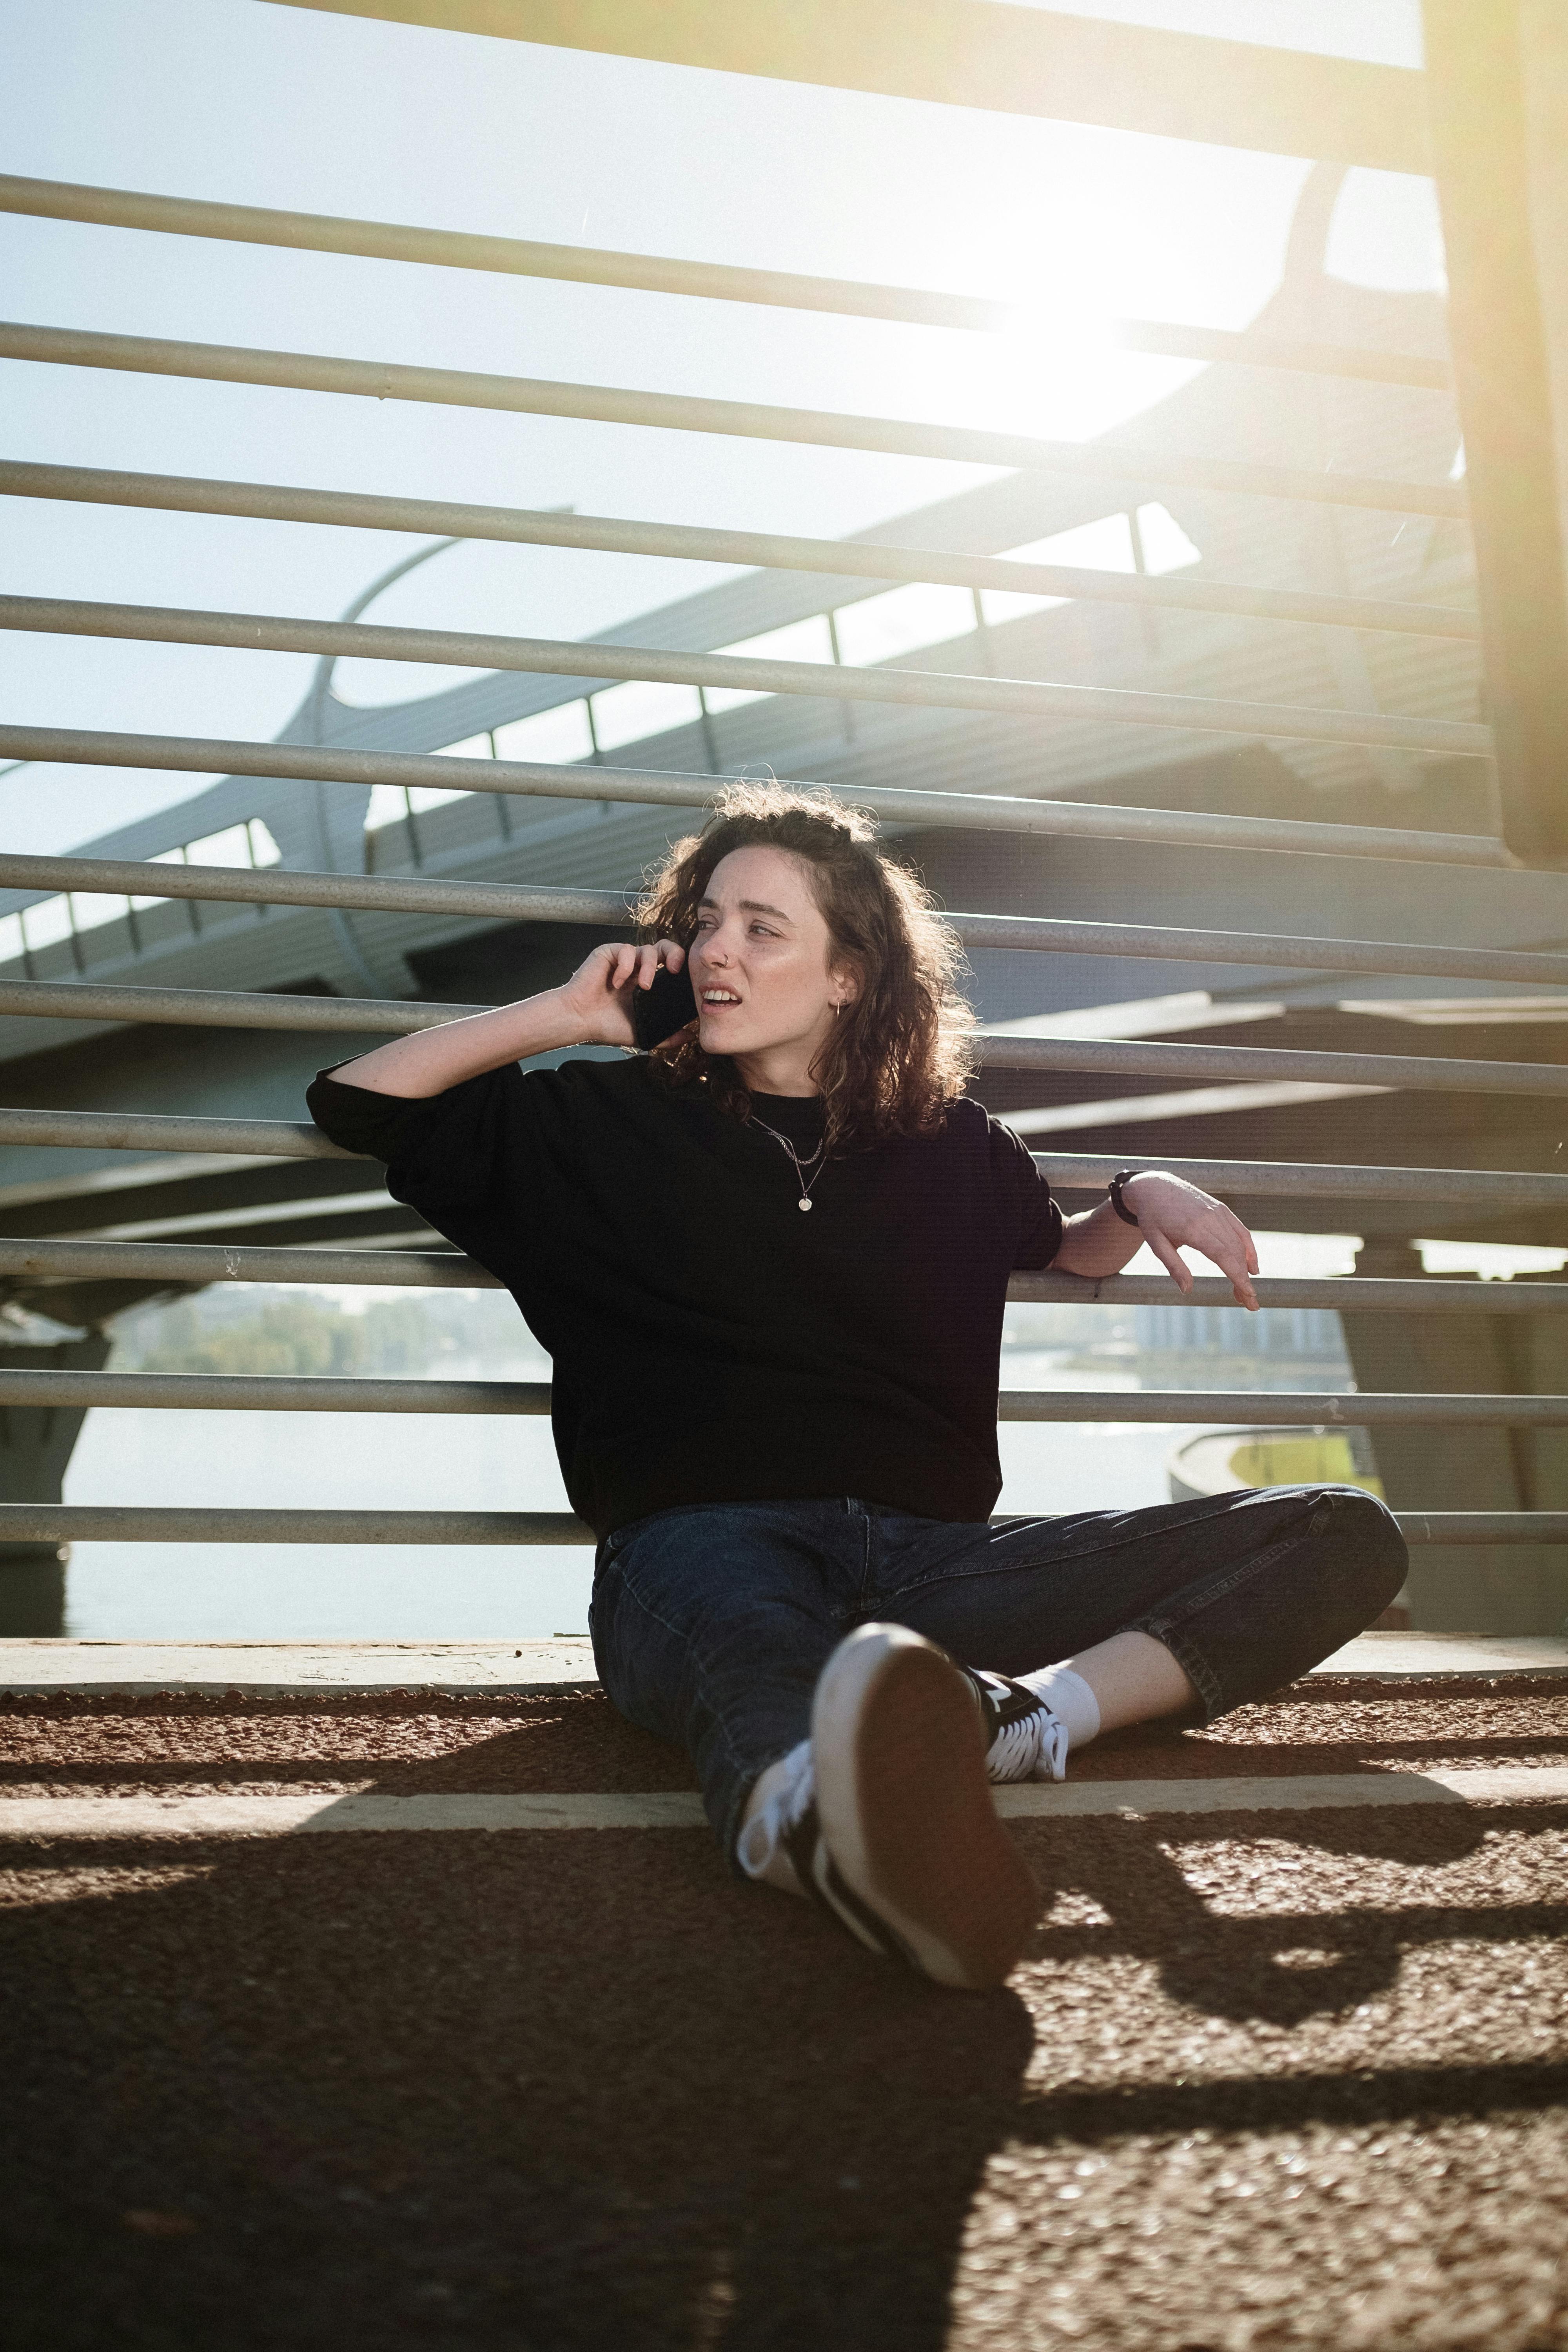 Una mujer alterada hablando con alguien por teléfono | Fuente: Pexels